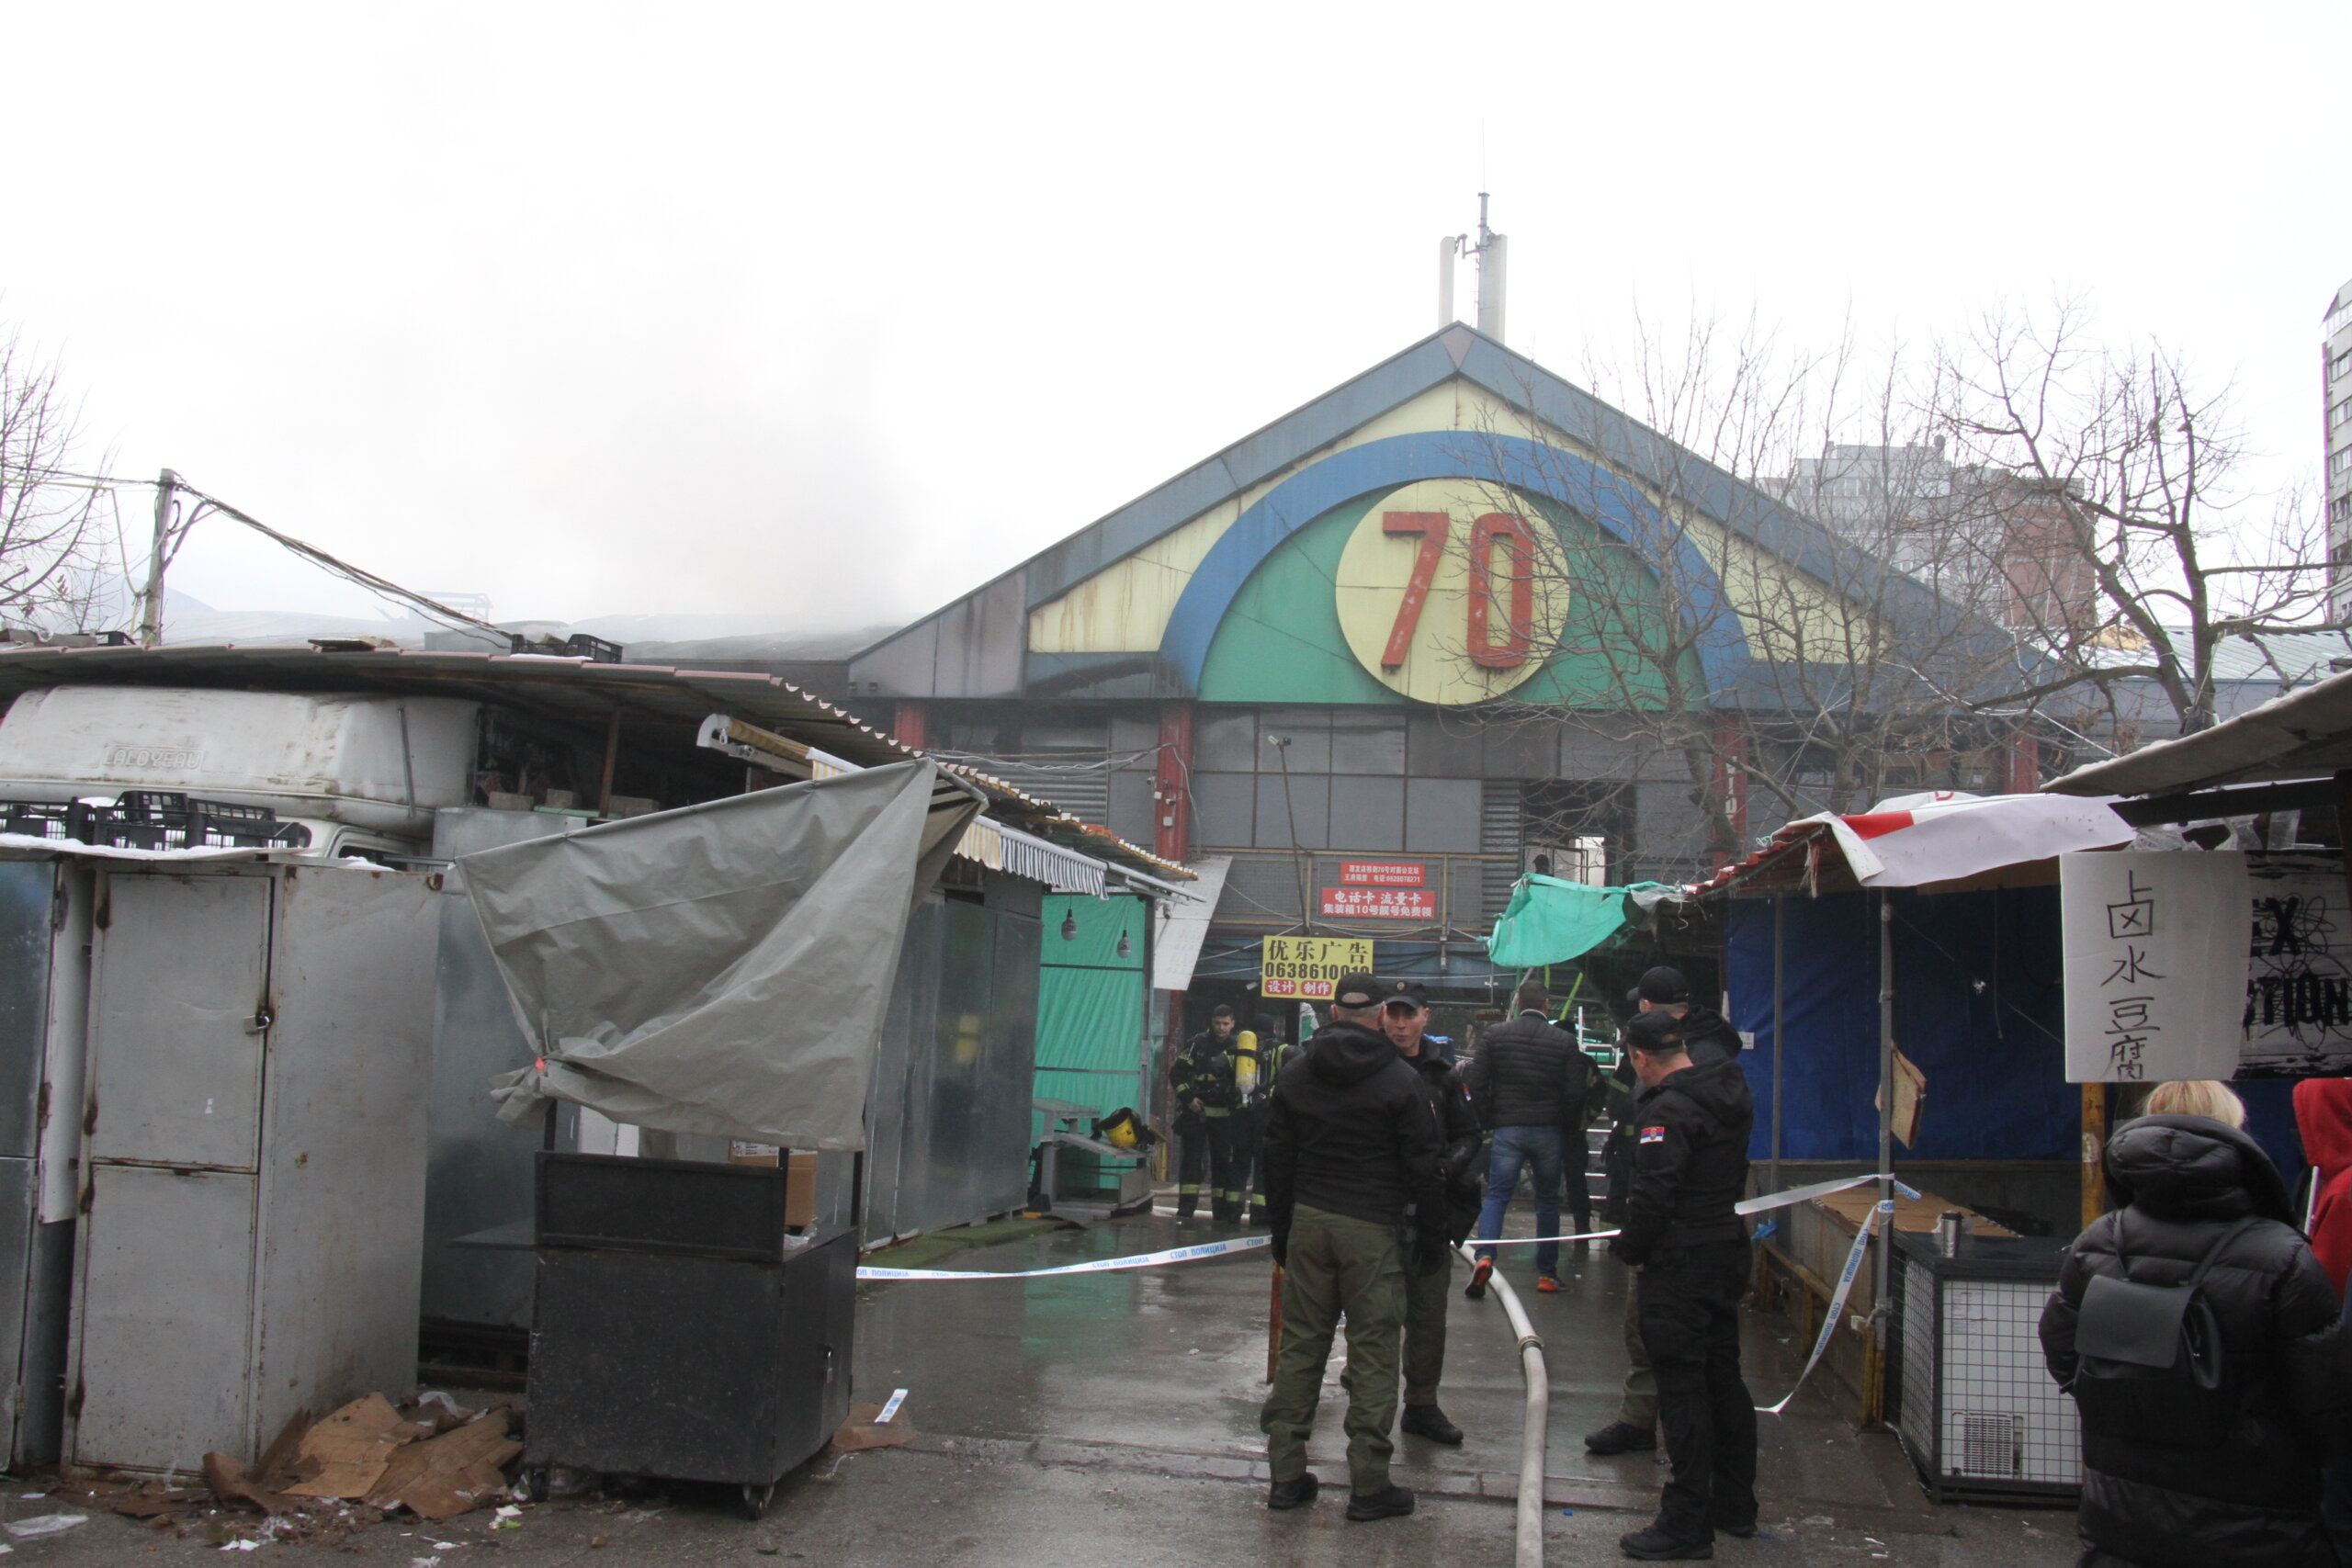 Reporter Danasa u Bloku 70: Da li drugi požar u Tržnom centru na Novom Beogradu znači da više nećemo ići "kod Kineza"? (FOTO) 2